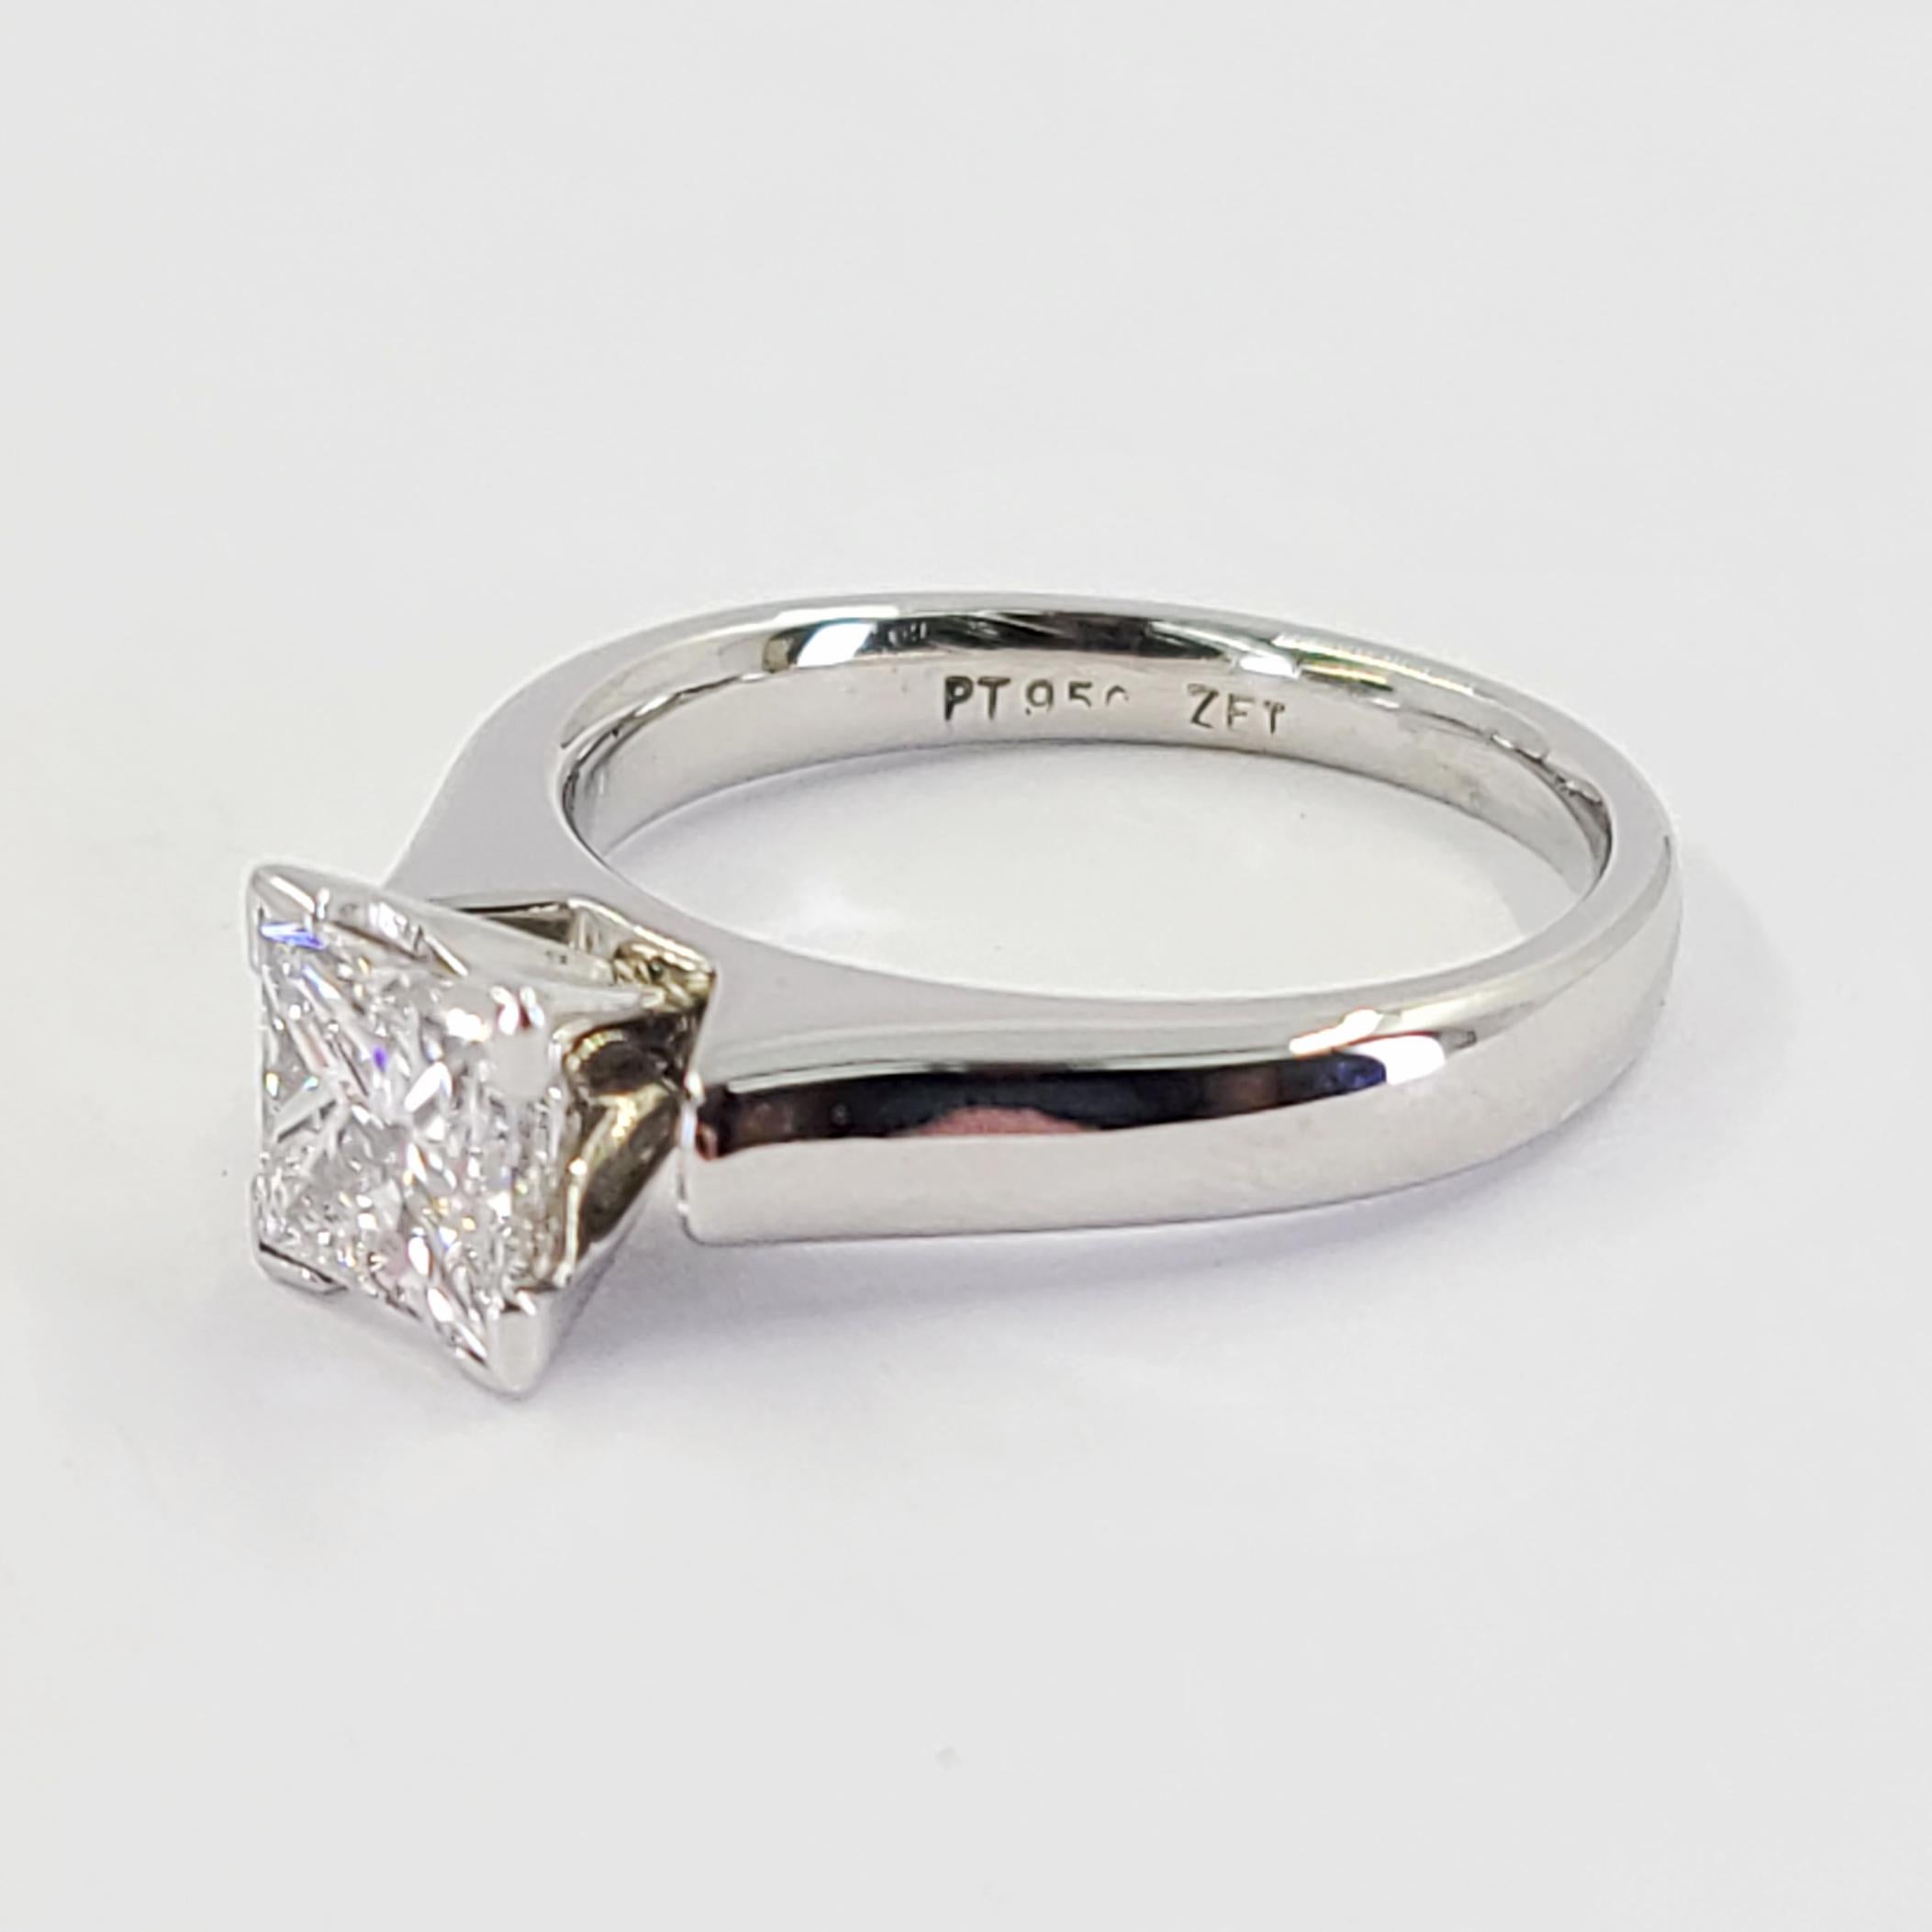 Platin Diamant Solitär Verlobungsring mit einem 1,02 Karat Princess Cut Diamant GIA Graded (Bericht #12660532) als VS2 Klarheit & G Farbe. Fingergröße 5.5; Der Kauf beinhaltet einen Größenservice. Das fertige Gewicht beträgt 7,6 Gramm.